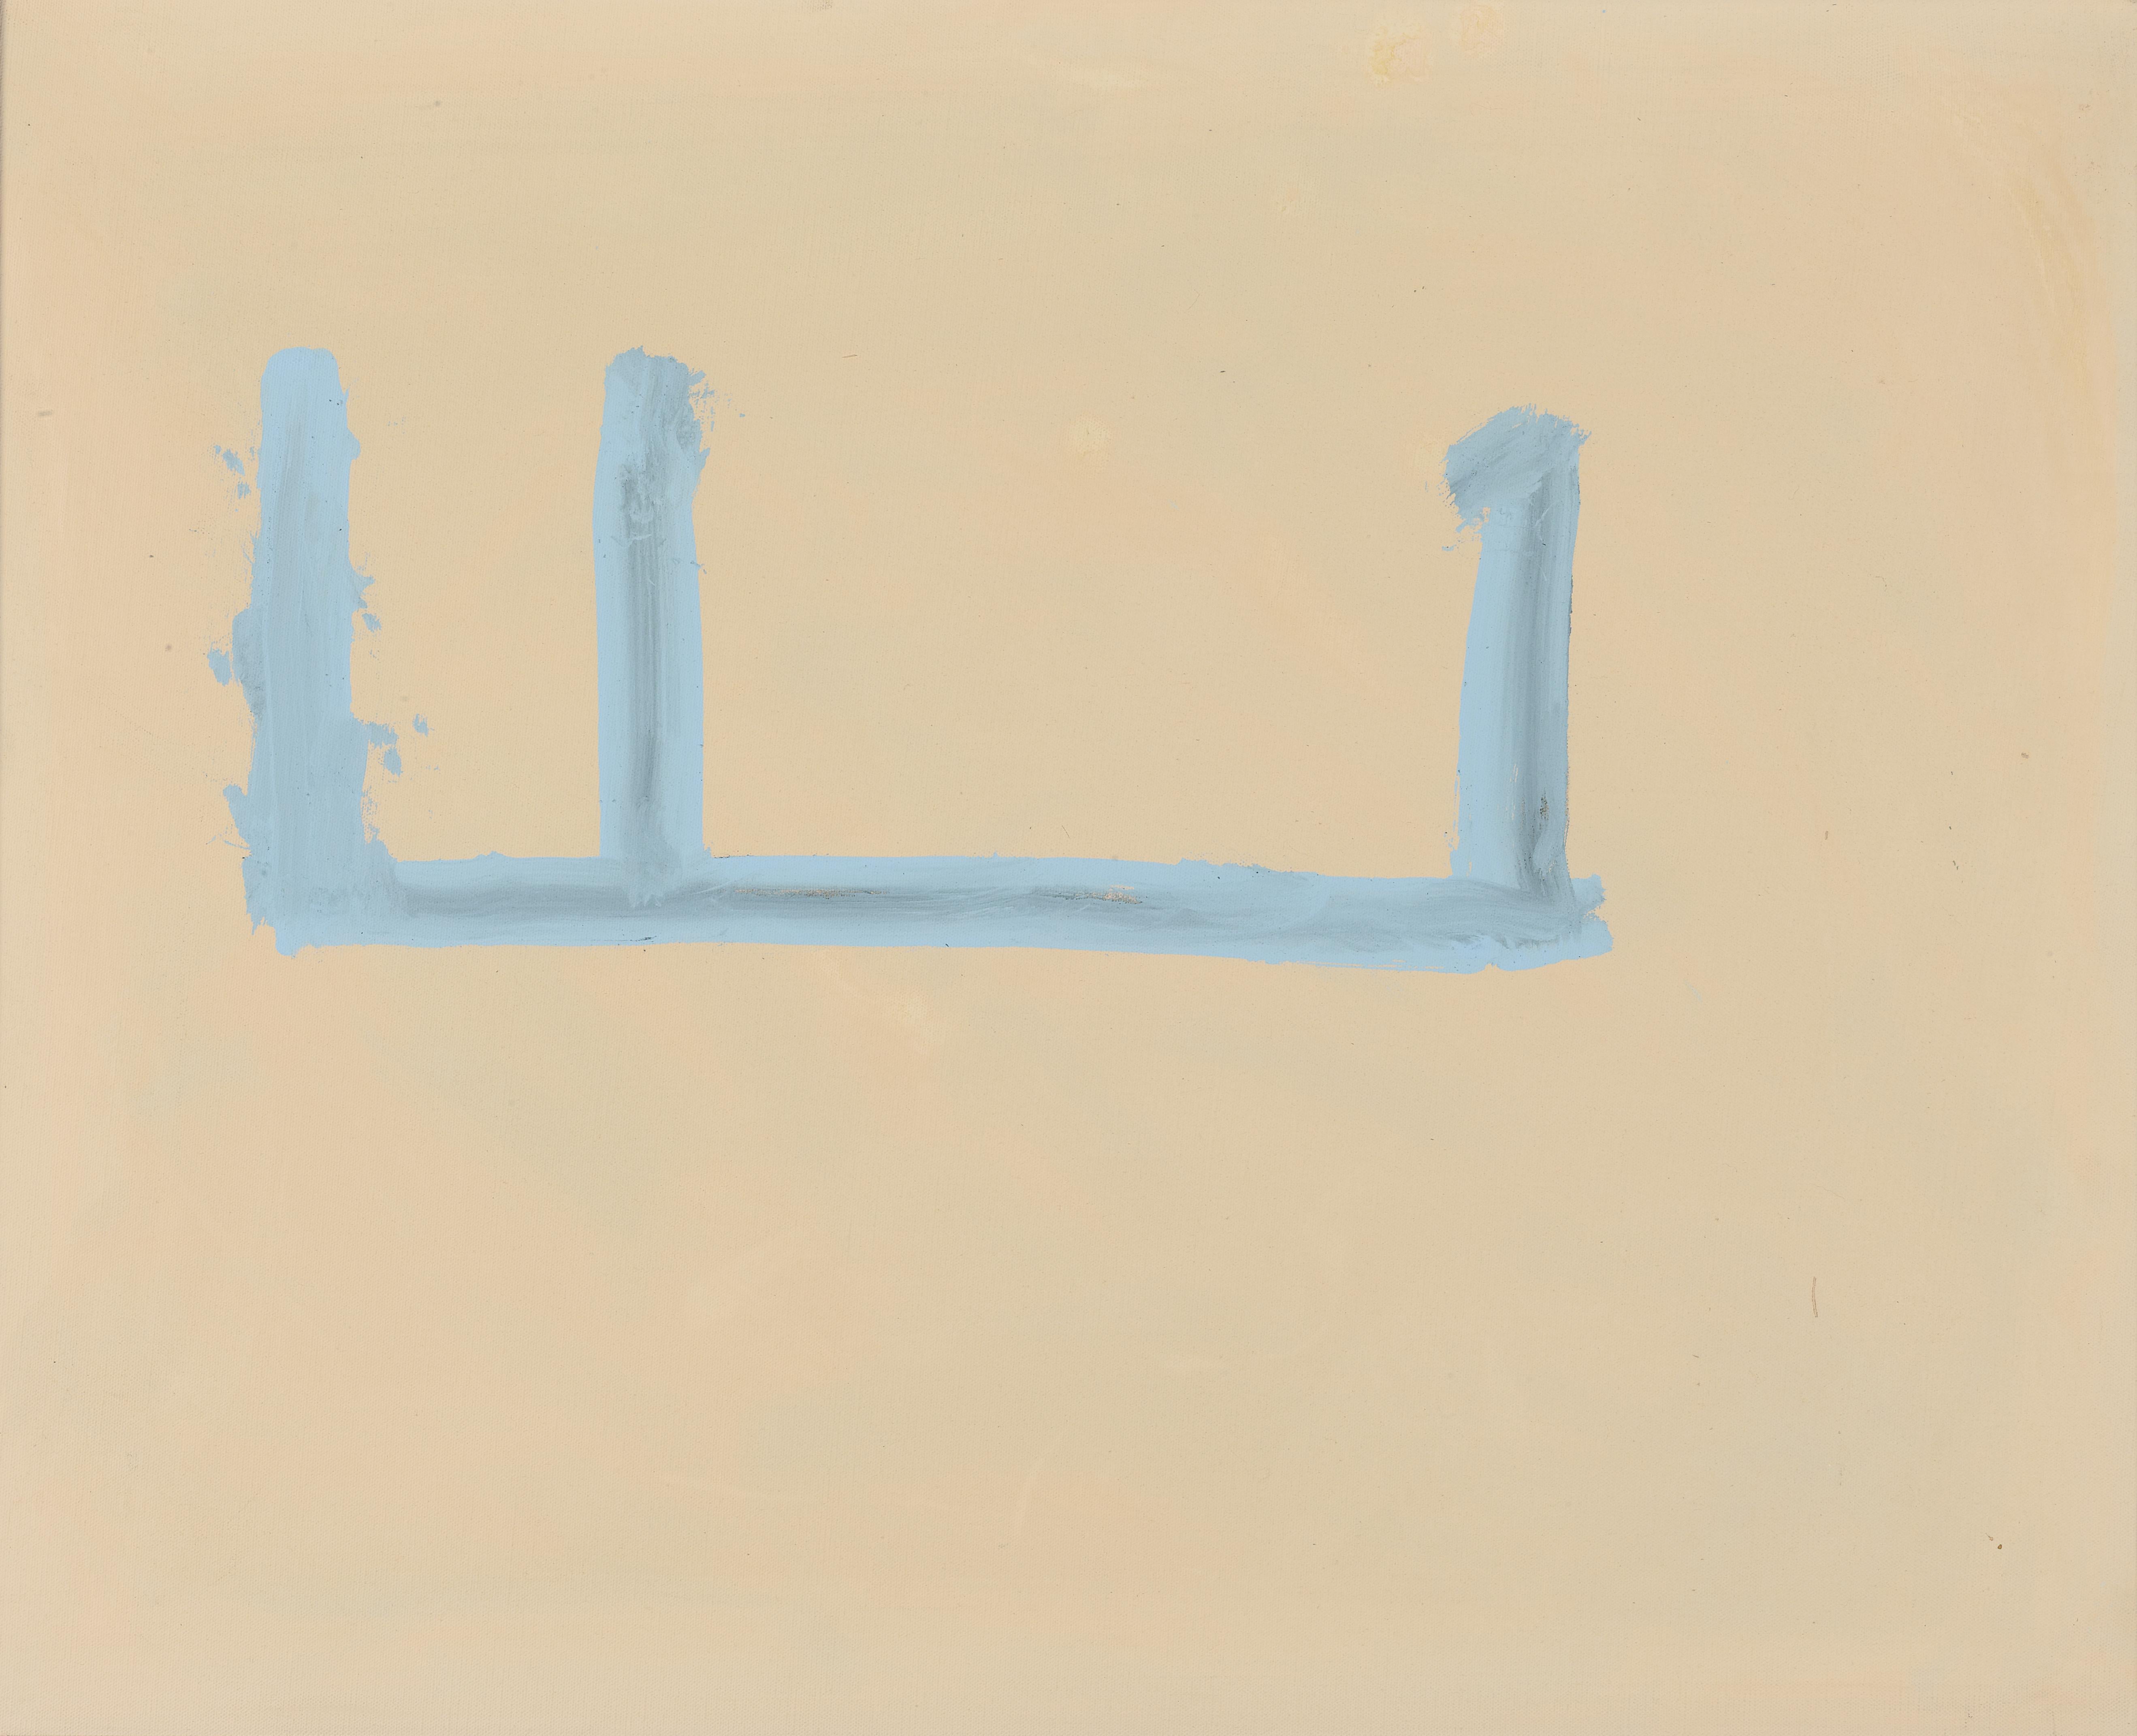 Abstract Painting Robert Motherwell - Ouvert n° 126 : en beige et bleu